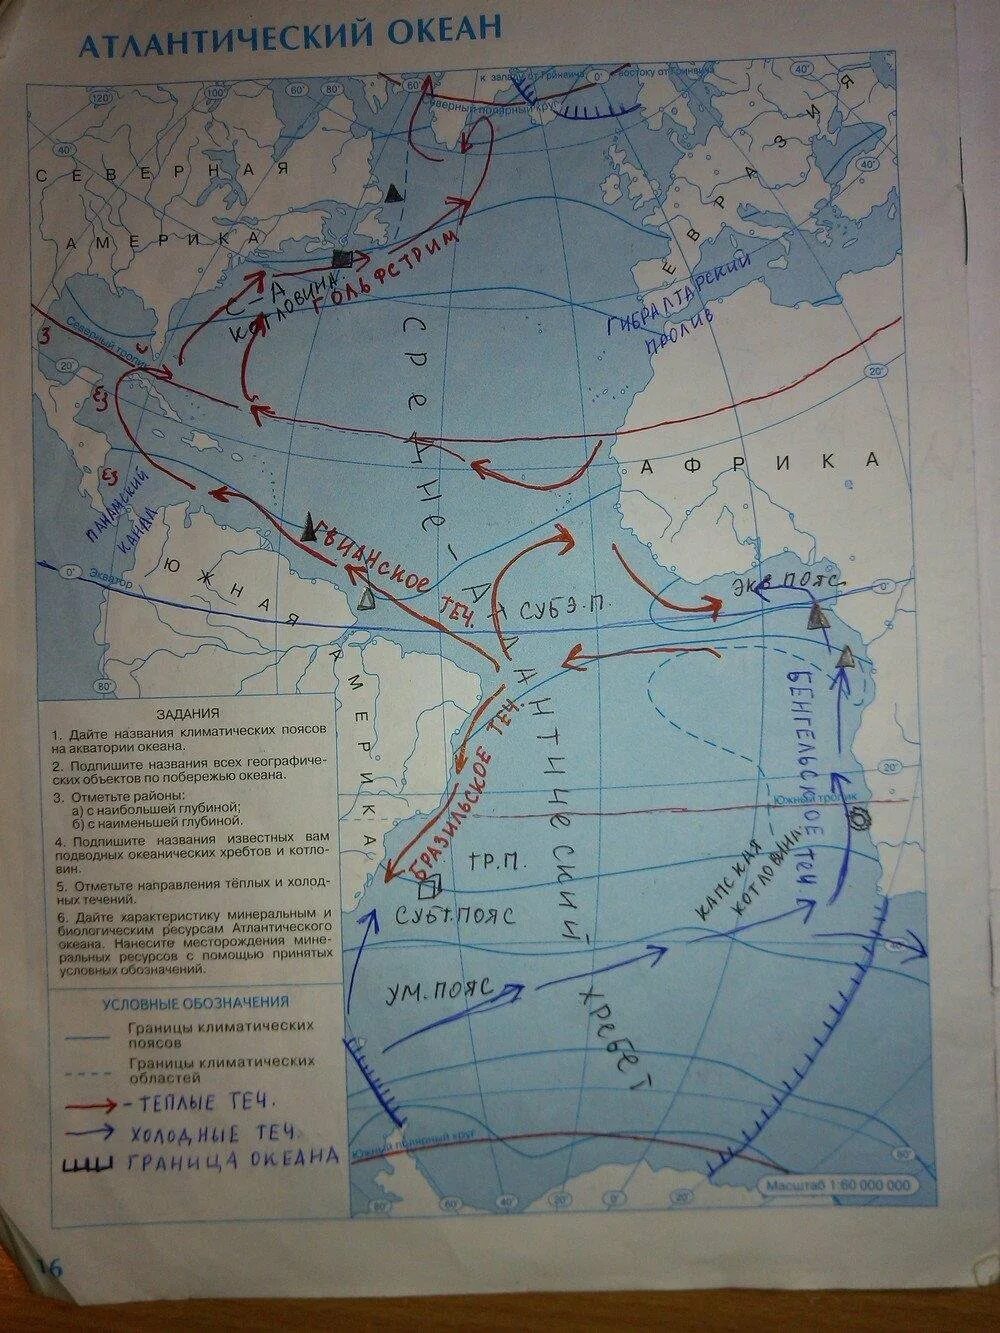 География 7 класс стр 58. Атлантический океан 7 класс география контурная карта. Атлантический океан контурная карта 7 класс гдз. Гдз по географии 7 класс контурные карты стр 16 Атлантический океан. География 7 класс контурная карта страница 16 Атлантический океан гдз.